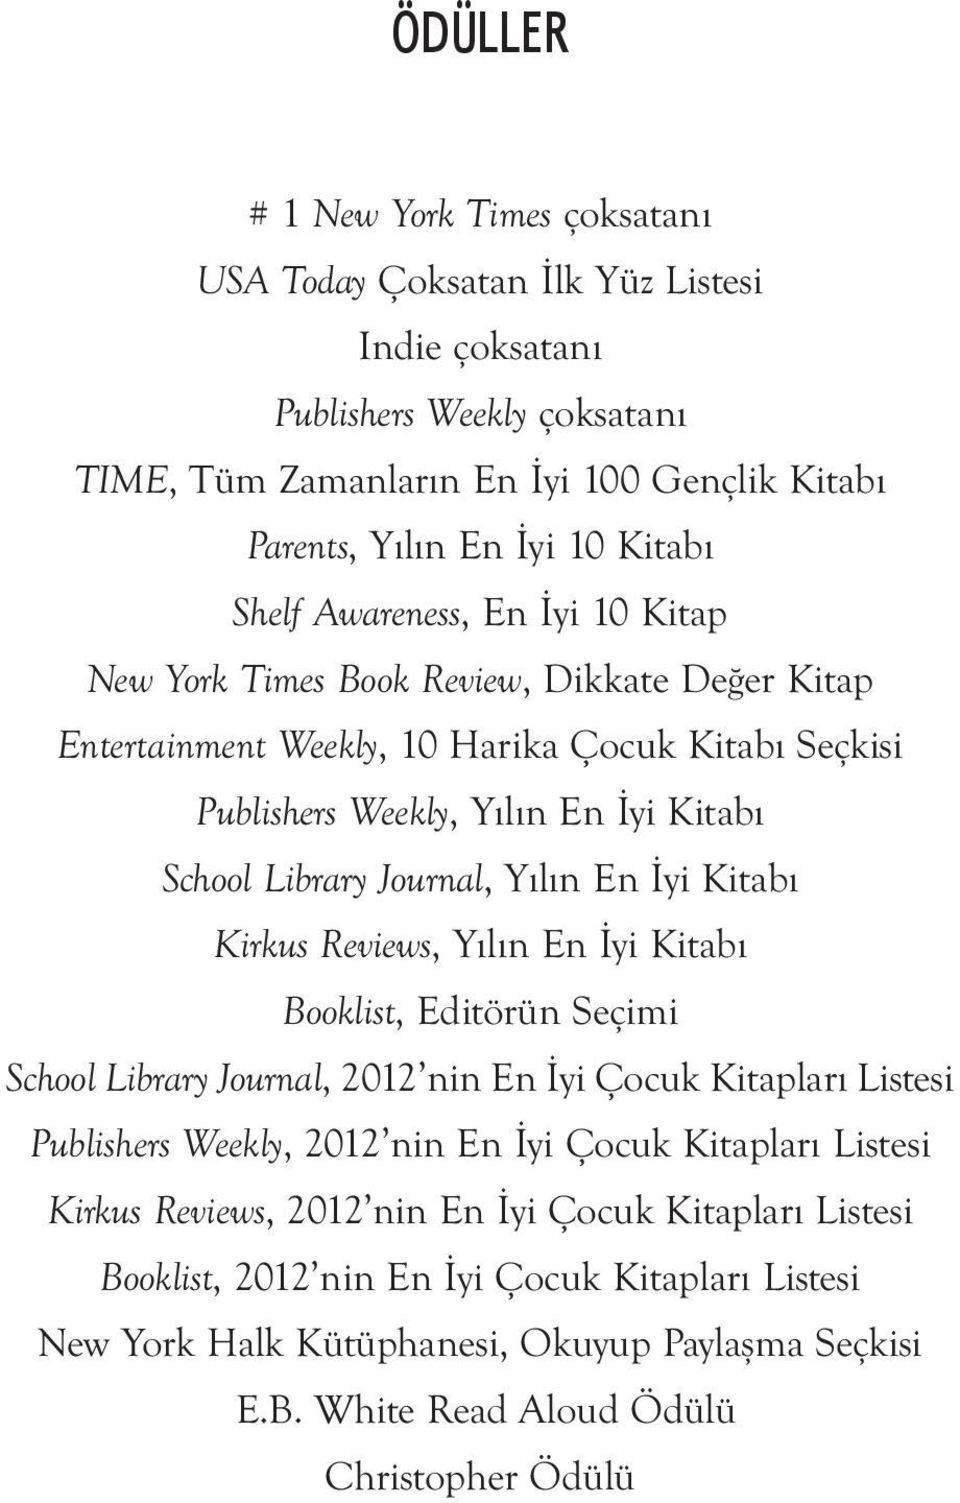 Yılın En İyi Kitabı Kirkus Reviews, Yılın En İyi Kitabı Booklist, Editörün Seçimi School Library Journal, 2012 nin En İyi Çocuk Kitapları Listesi Publishers Weekly, 2012 nin En İyi Çocuk Kitapları